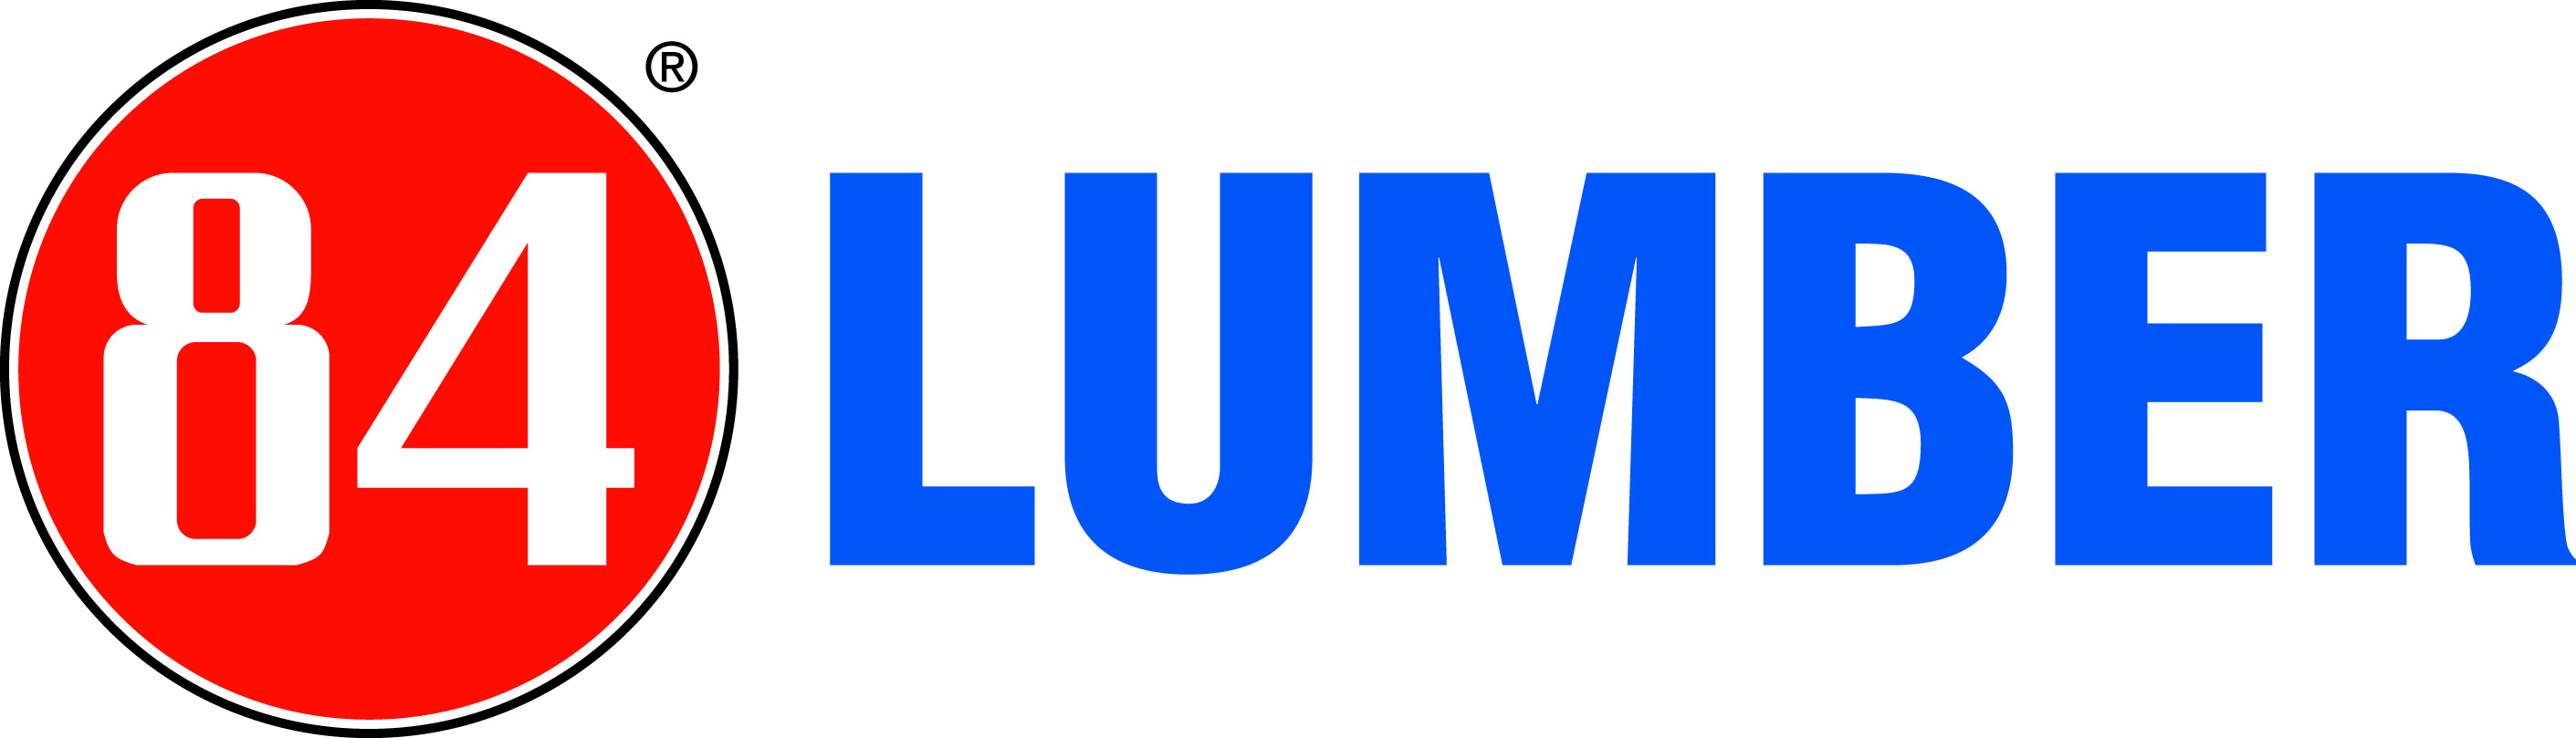 84 Lumbler logo